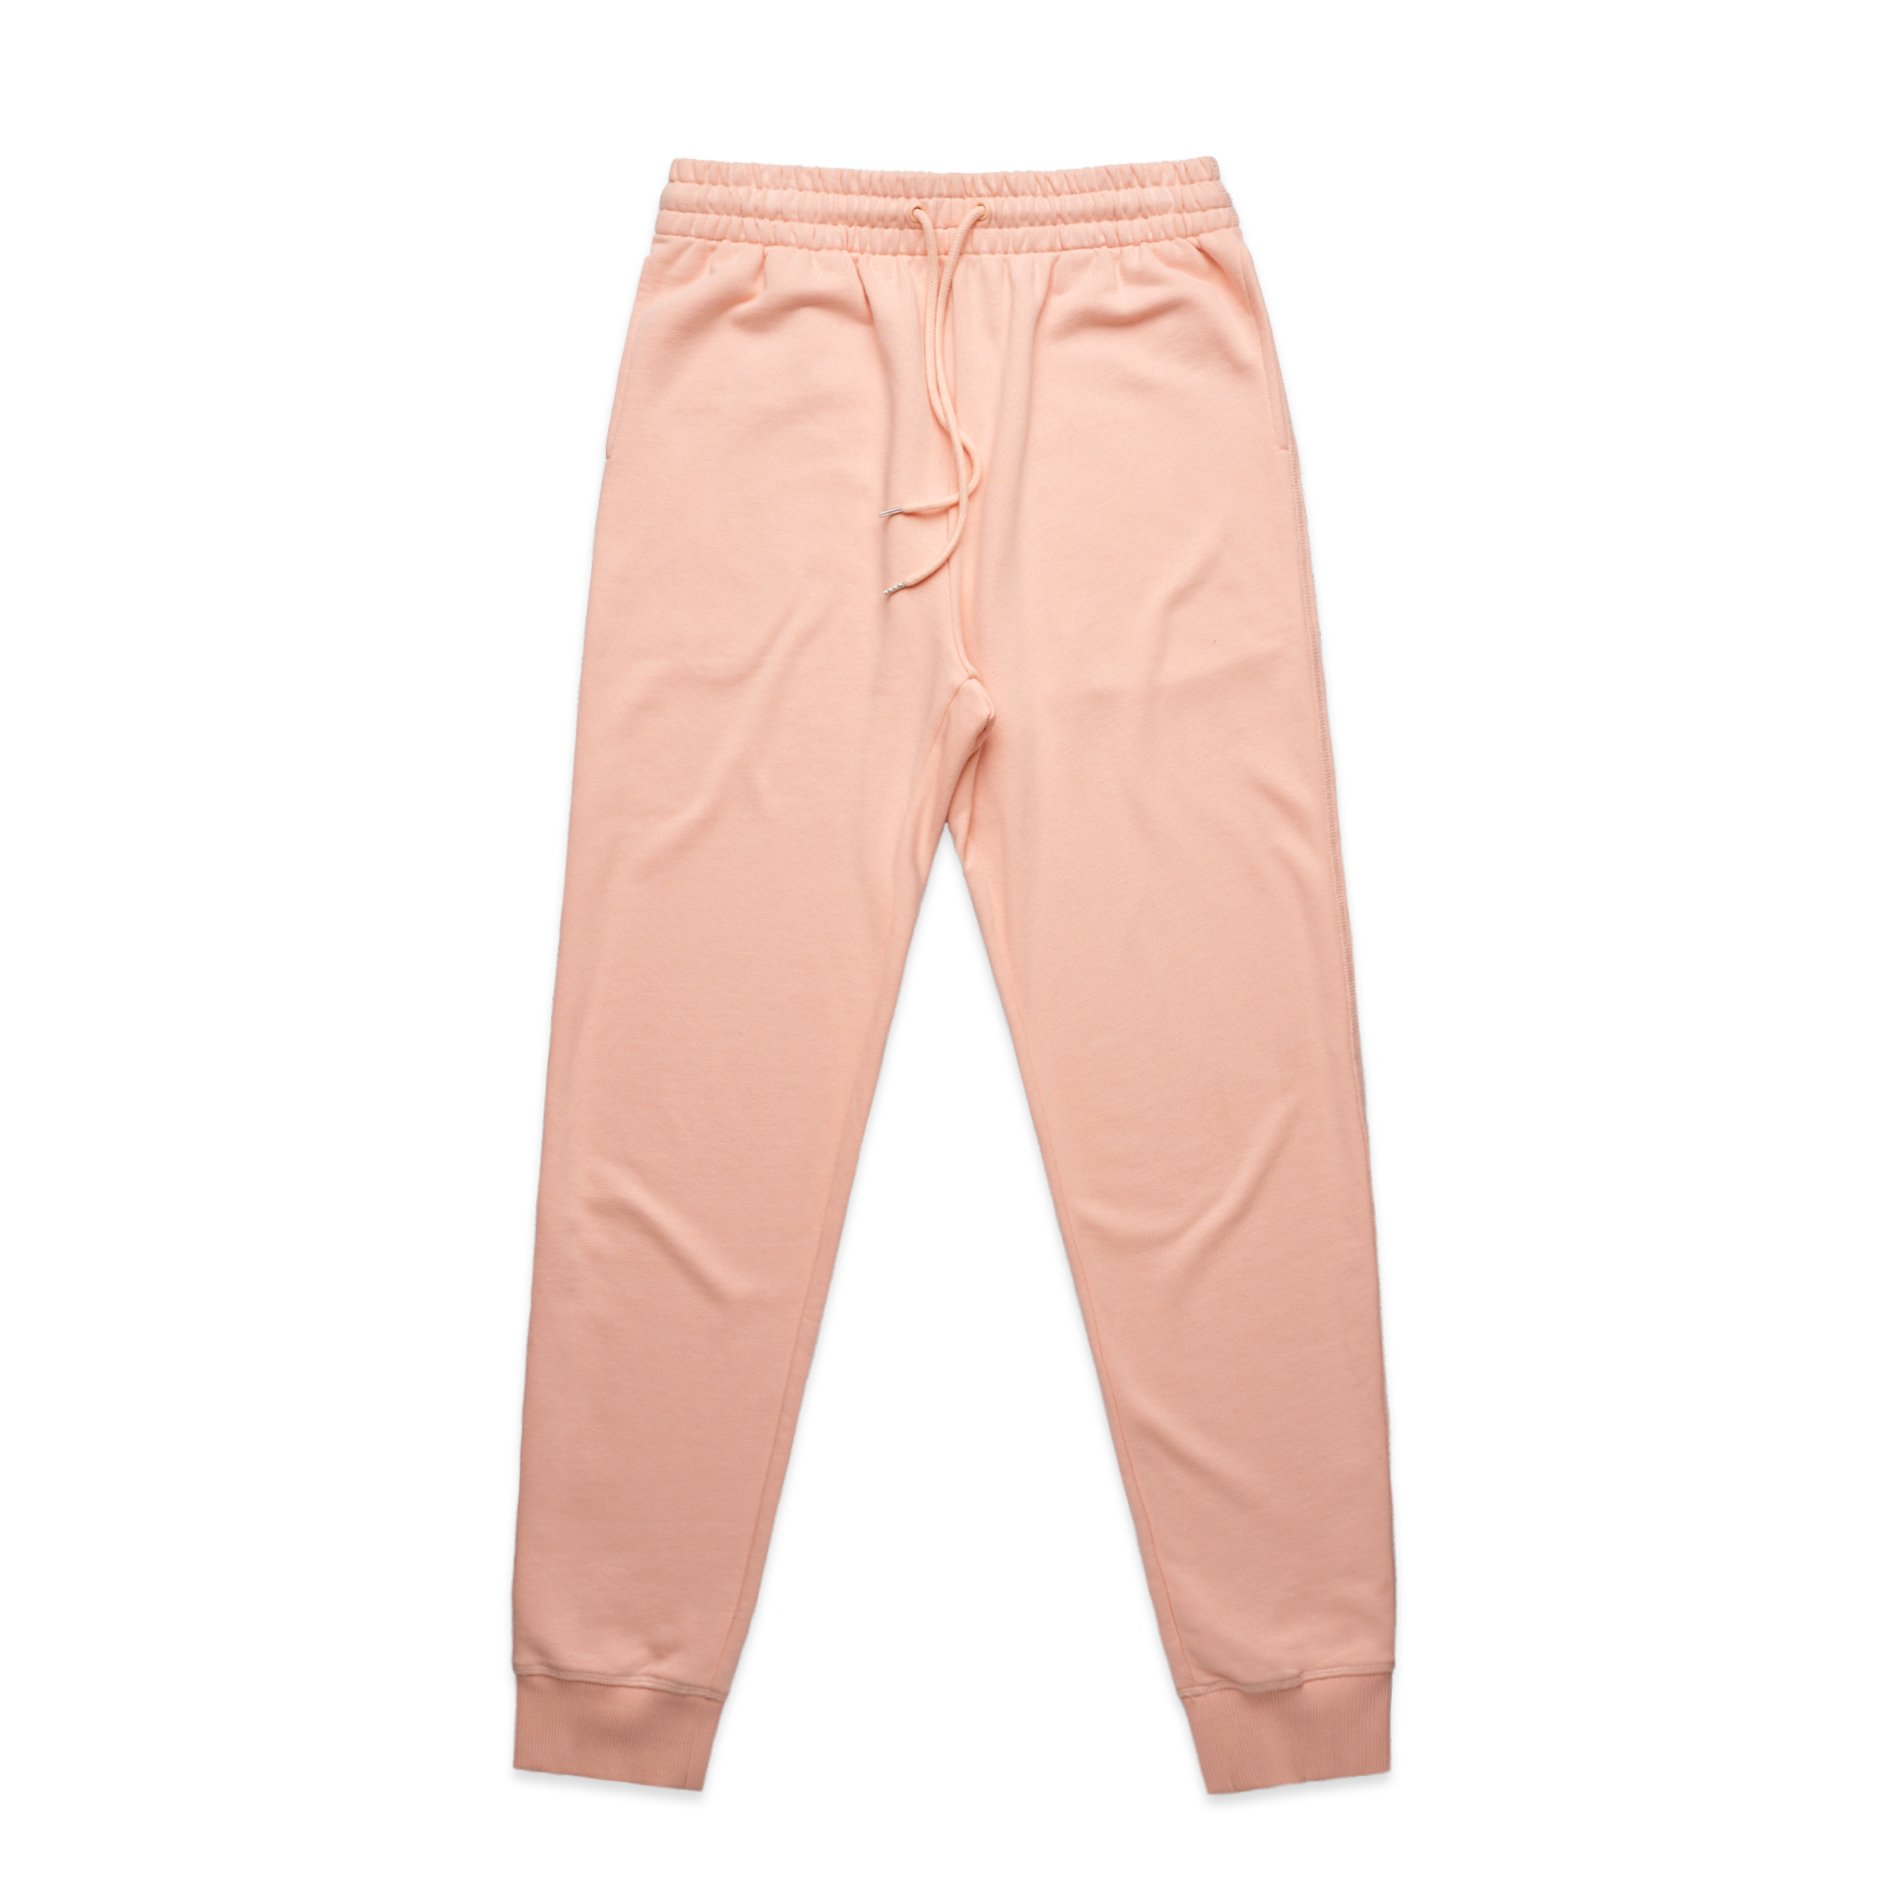 AS Colour Premium Track Pants - 4920